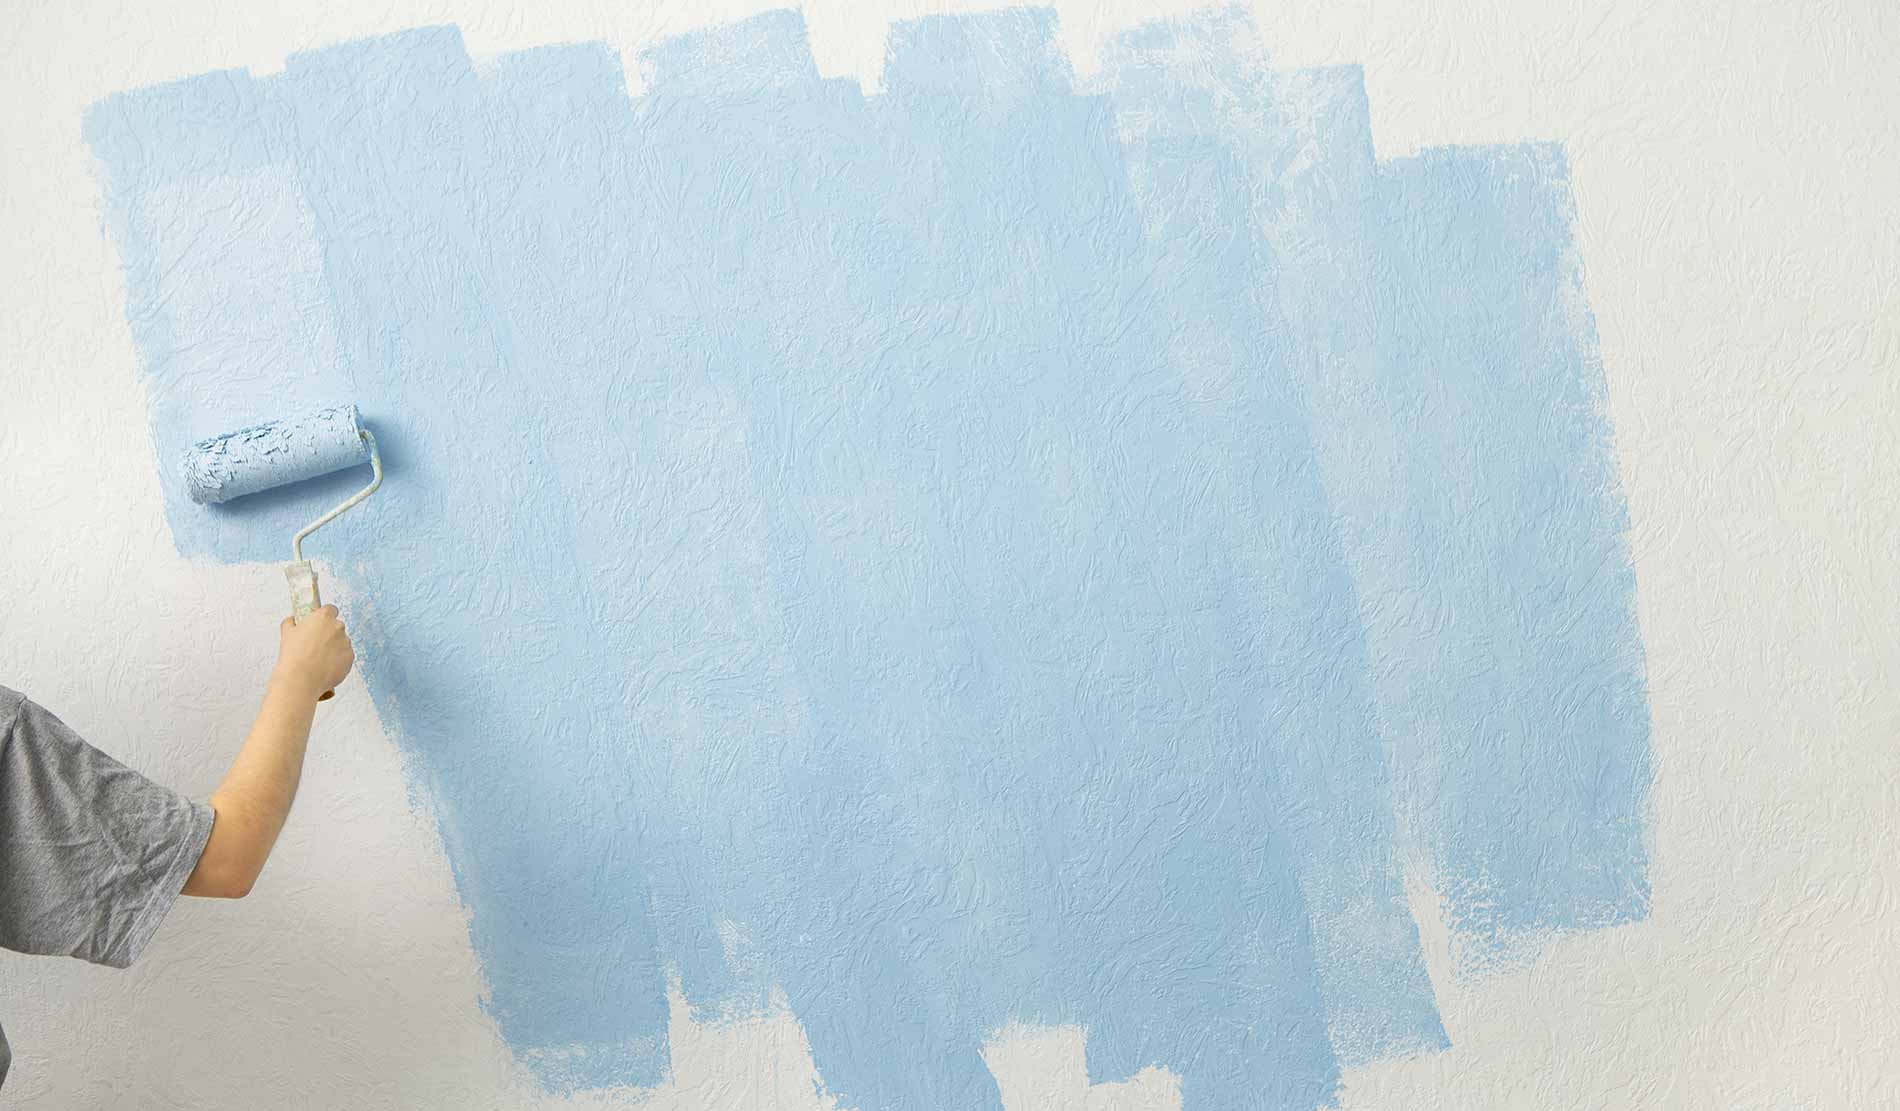 Eik onderwijzen burgemeester Behang verven: kun je schilderen over behang? - Fotobehang